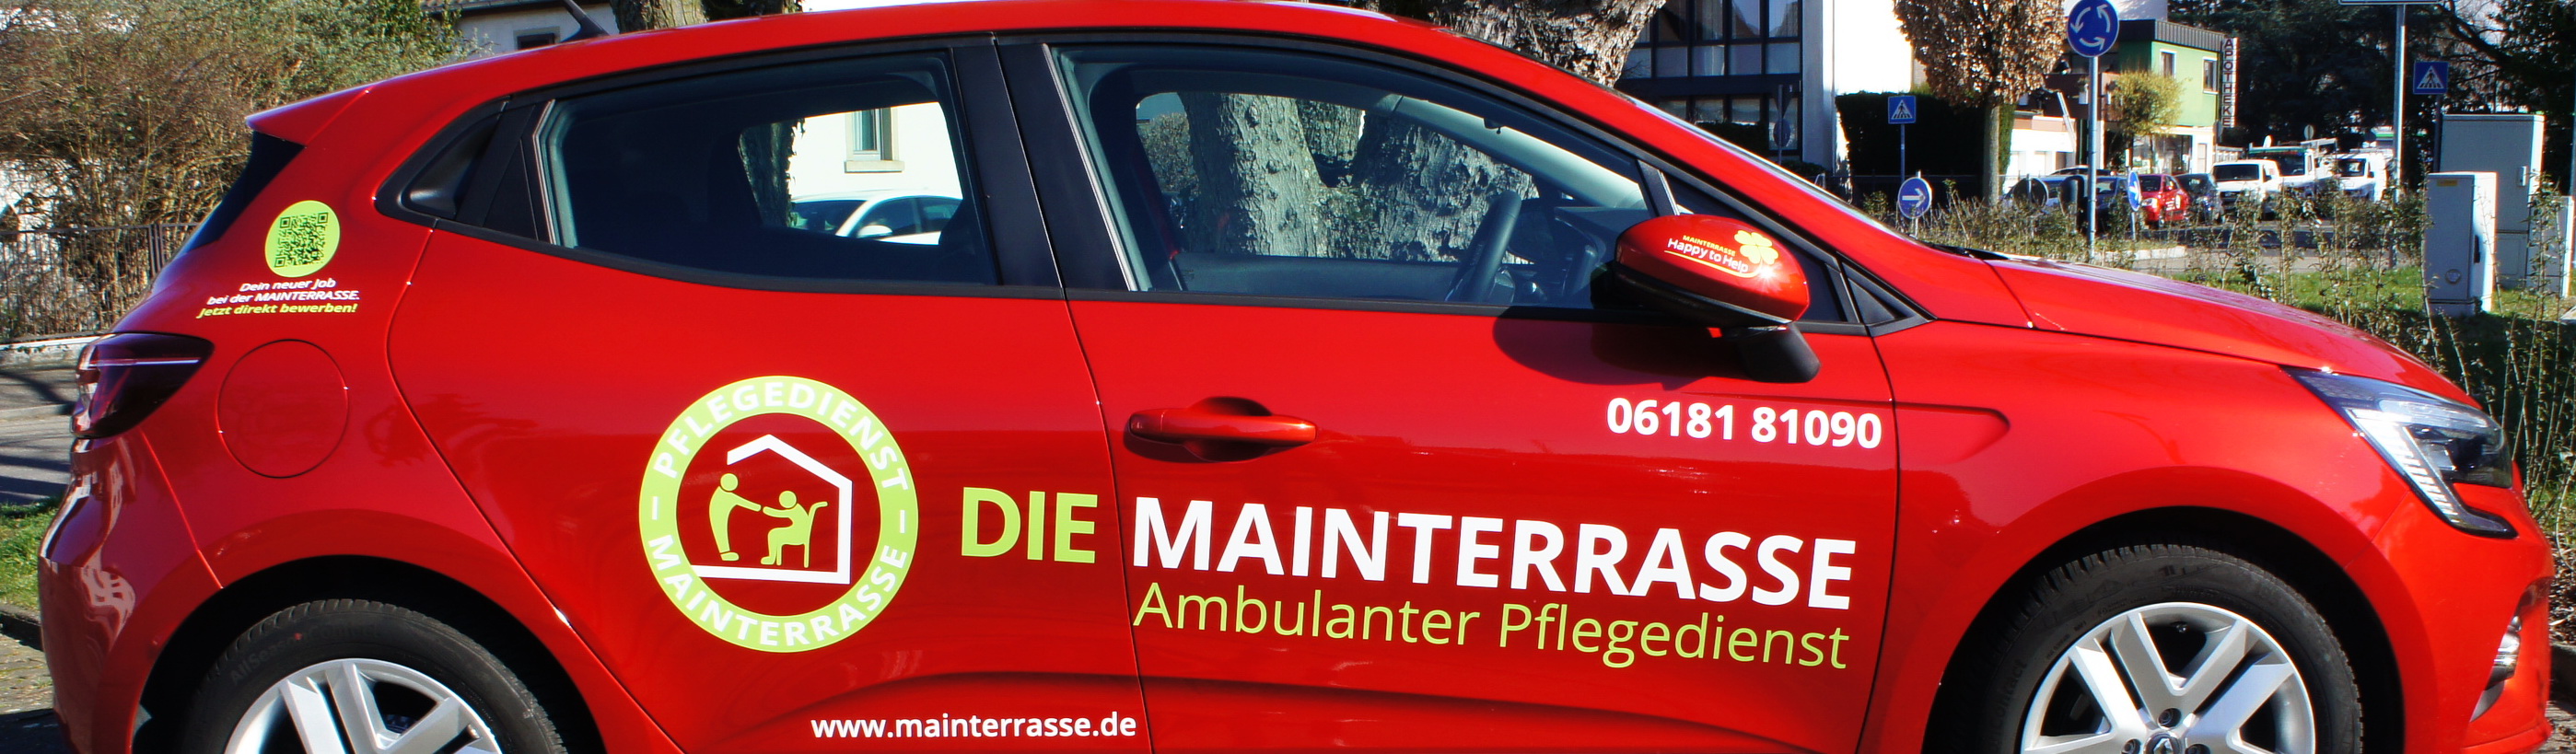 Ambulanter Pflegedienst "Mainterrasse" GmbH